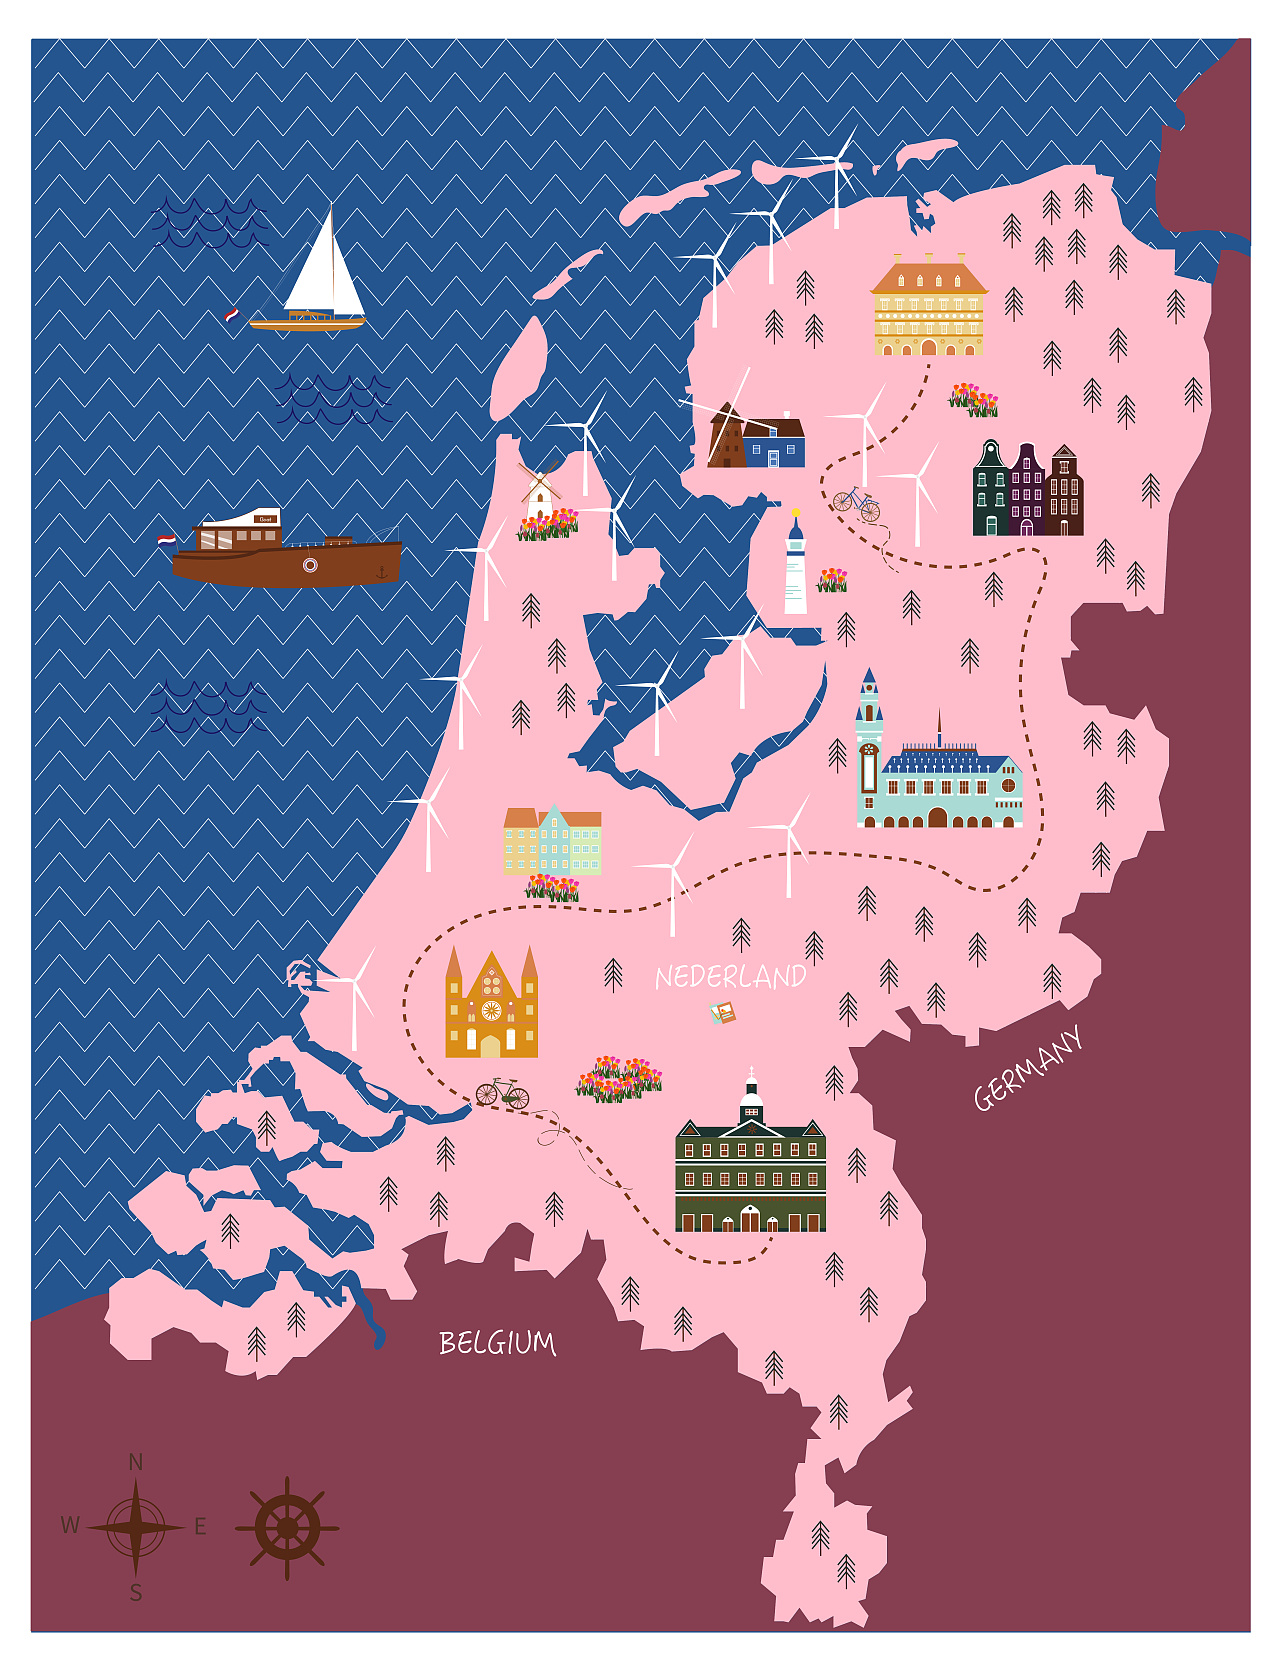 《运河之旅》之荷兰站 被荷兰的风景吸引 便创作了这幅荷兰地图 荷兰